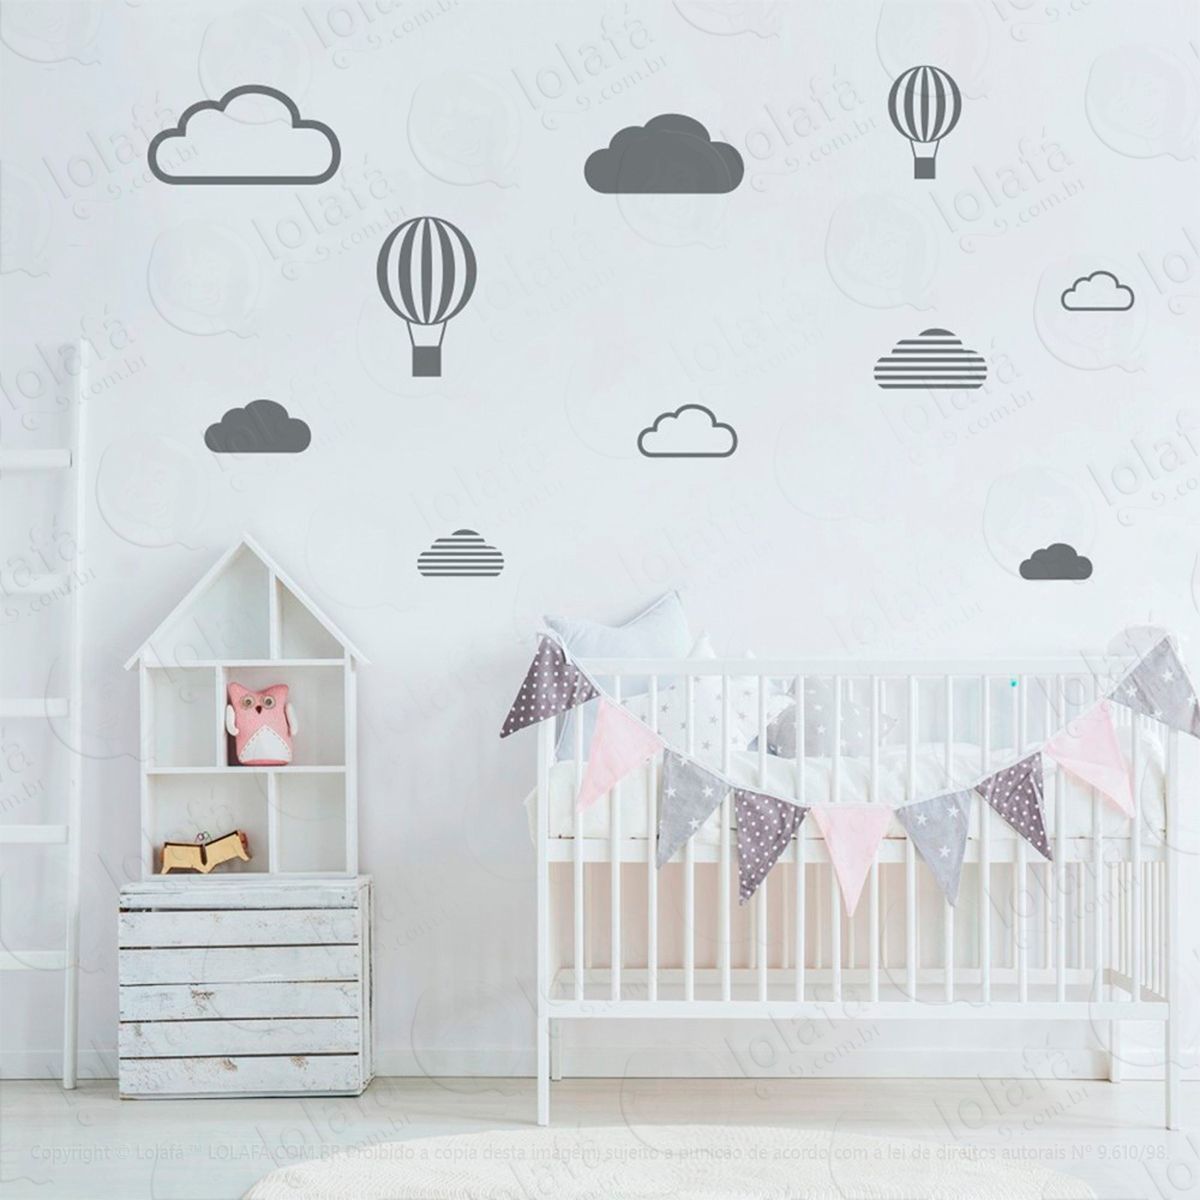 adesivos nuvens e balões 10 peças adesivos para quarto de bebê infantil - mod:479